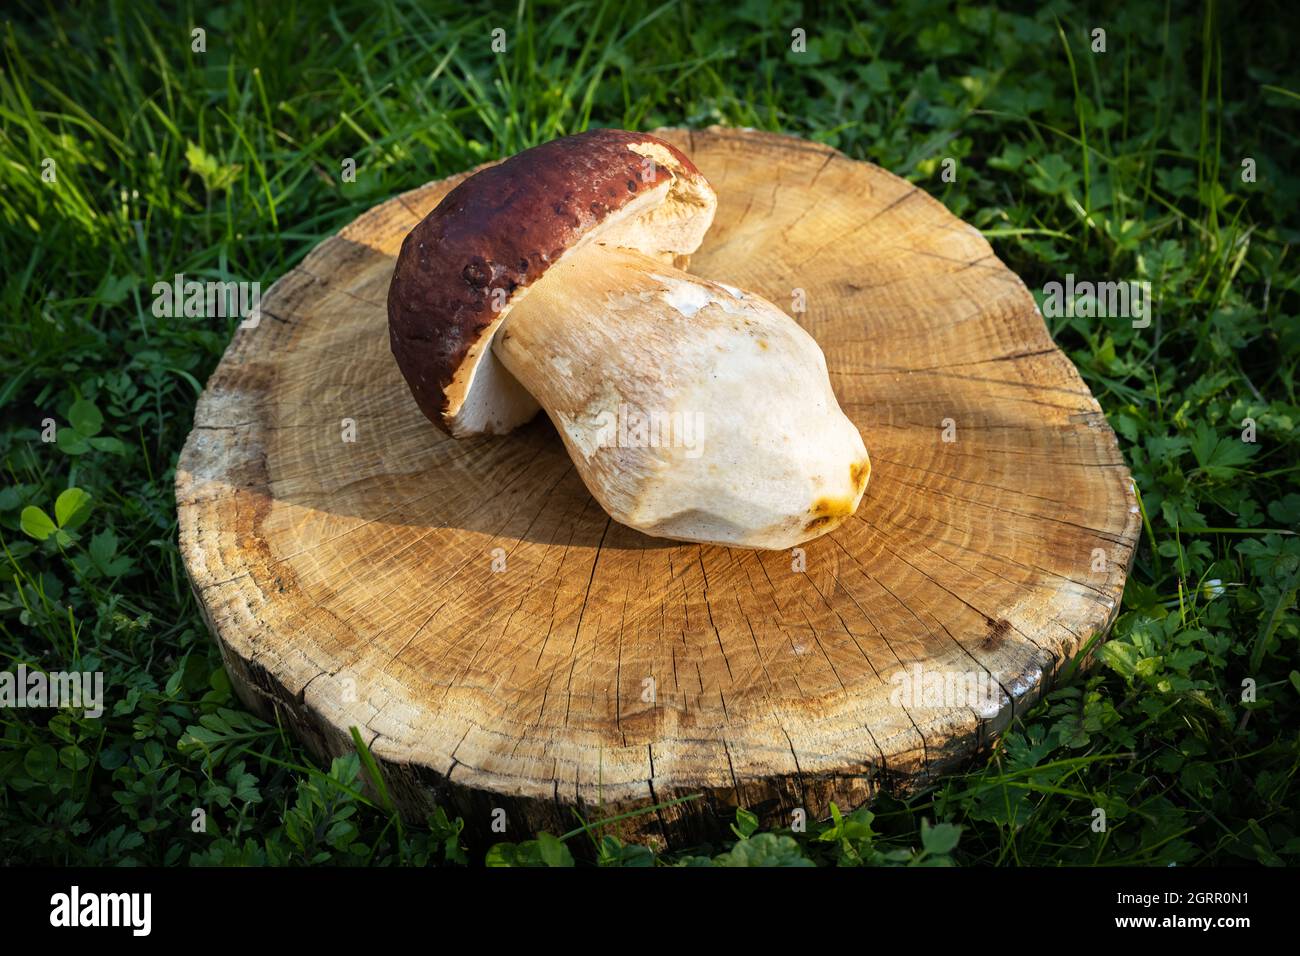 Grandi porcini di funghi bianchi su piatto di legno nel giardino d'autunno. Fotografia alimentare Foto Stock